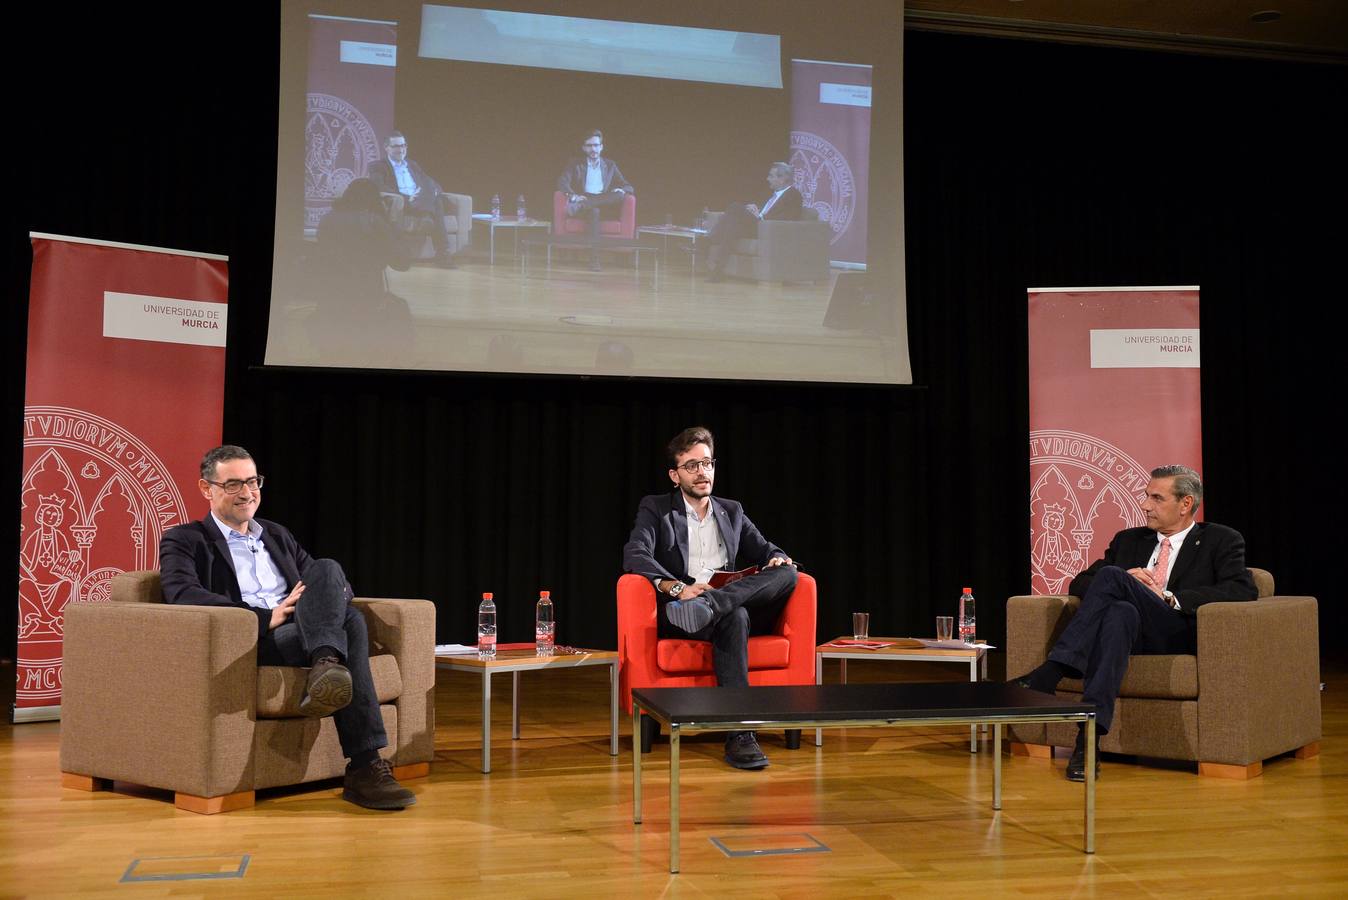 Los dos candidatos a rector de la Universidad de Murcia (UMU) Pedro Lozano y José Luján participaron en un debate con estudiantes en la Facultad de Educación.